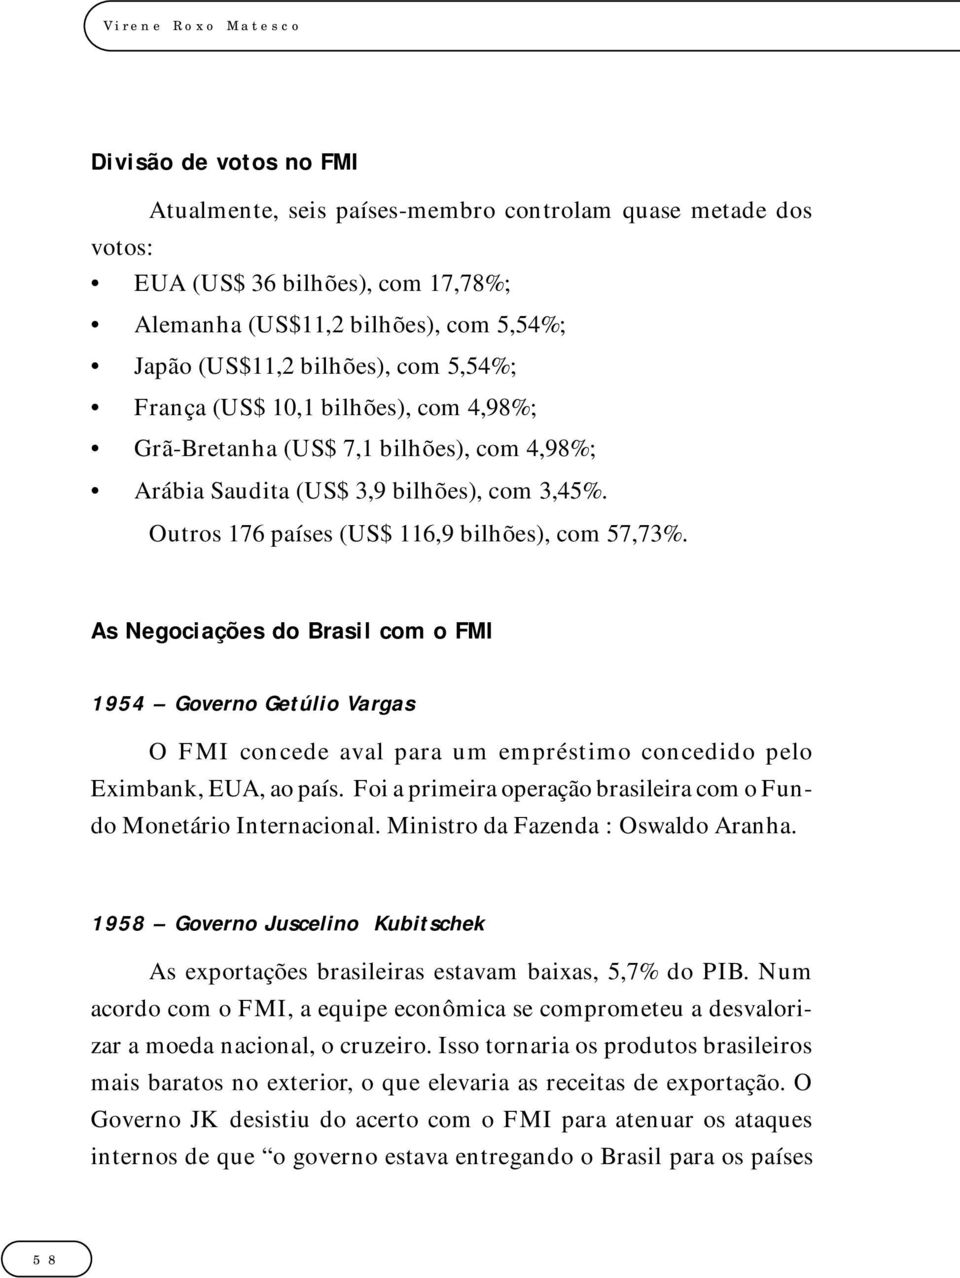 As Negociações do Brasil com o FMI 1954 Governo Getúlio Vargas O FMI concede aval para um empréstimo concedido pelo Eximbank, EUA, ao país.